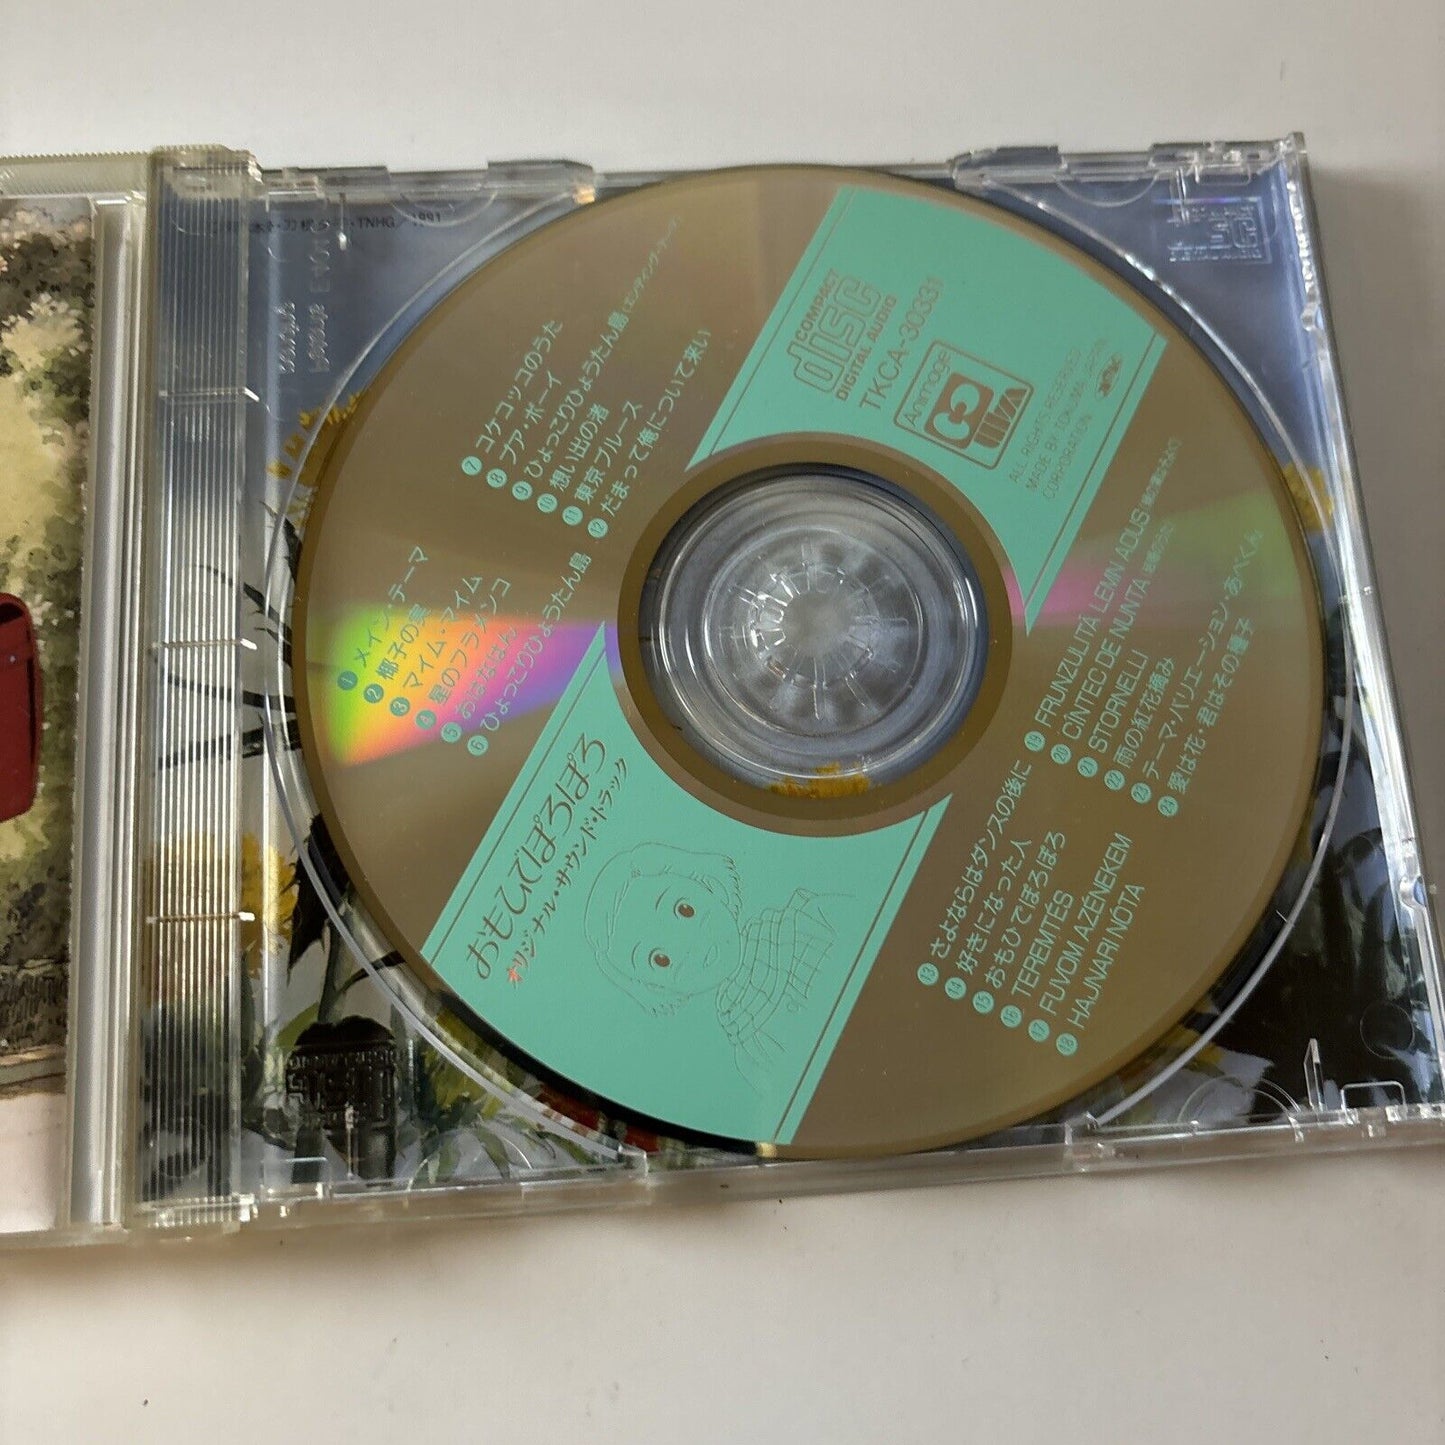 Only Yesterday - Studio Ghibli Movie Soundtrack (CD, 1991) Tkca-30331